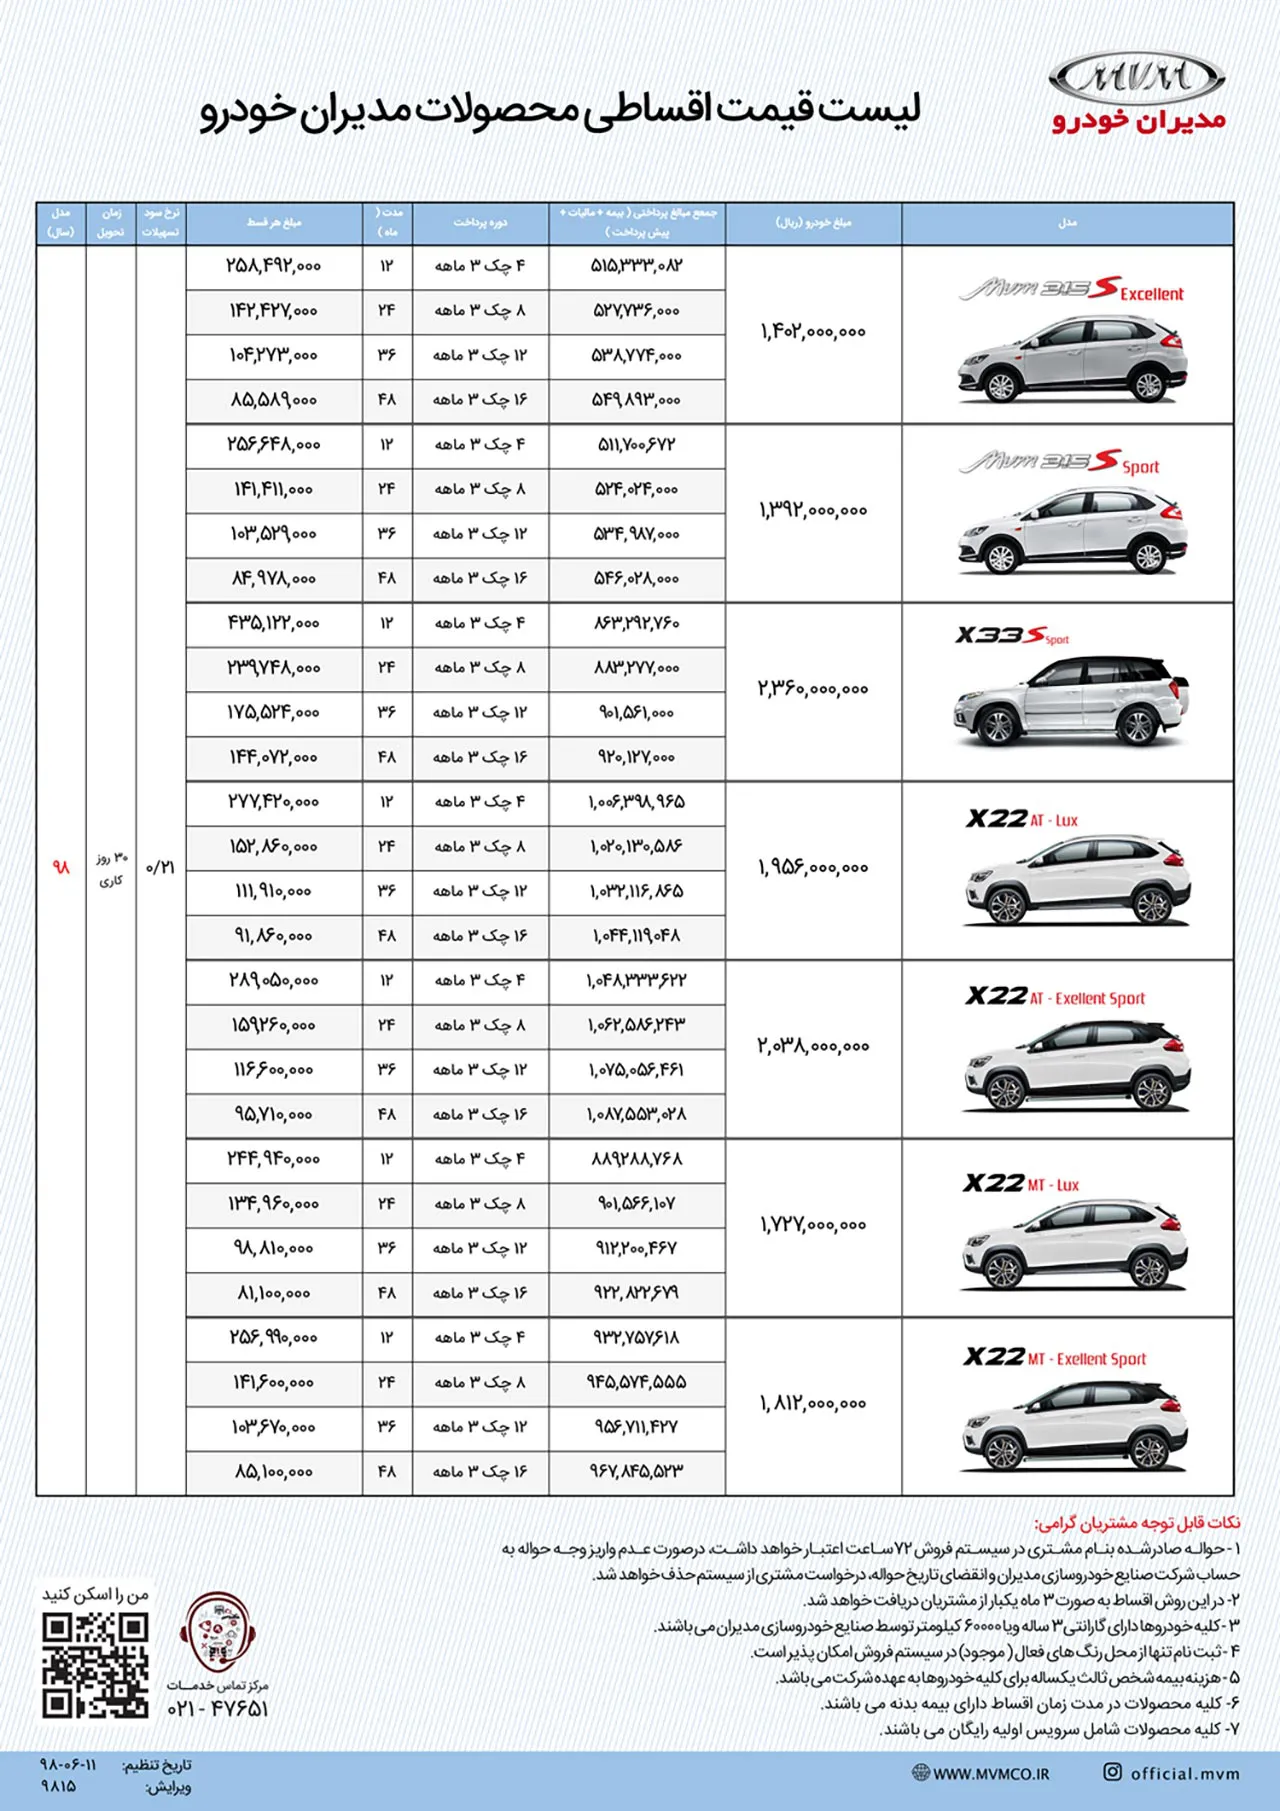 AutomobileFa MVM Sale condition Shahrivar 98